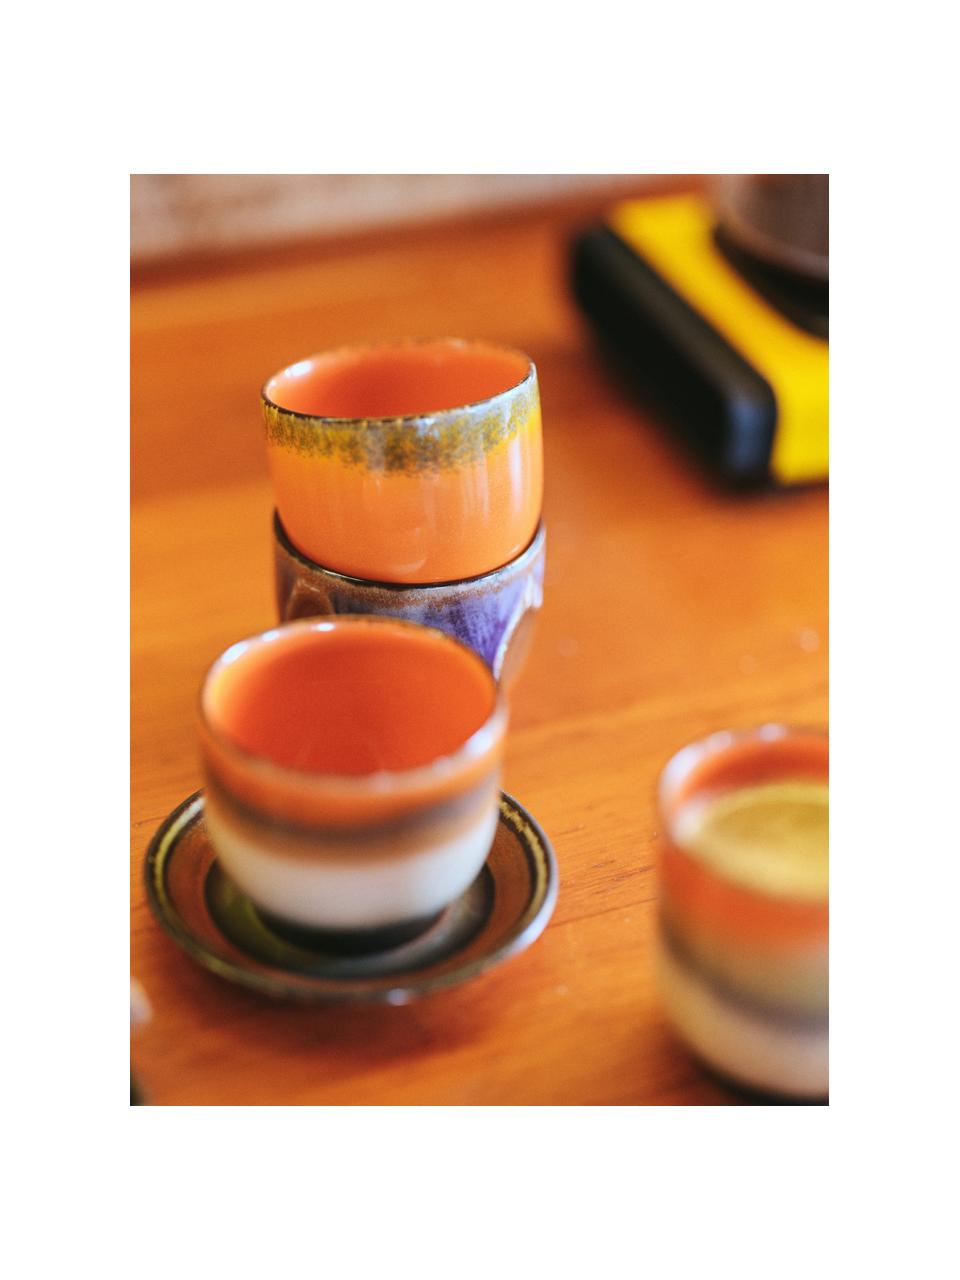 Tazze senza manico in ceramica fatte a mano 70's 4 pz, Ceramica, Arancione, Ø 8 x Alt. 7 cm, 230 ml